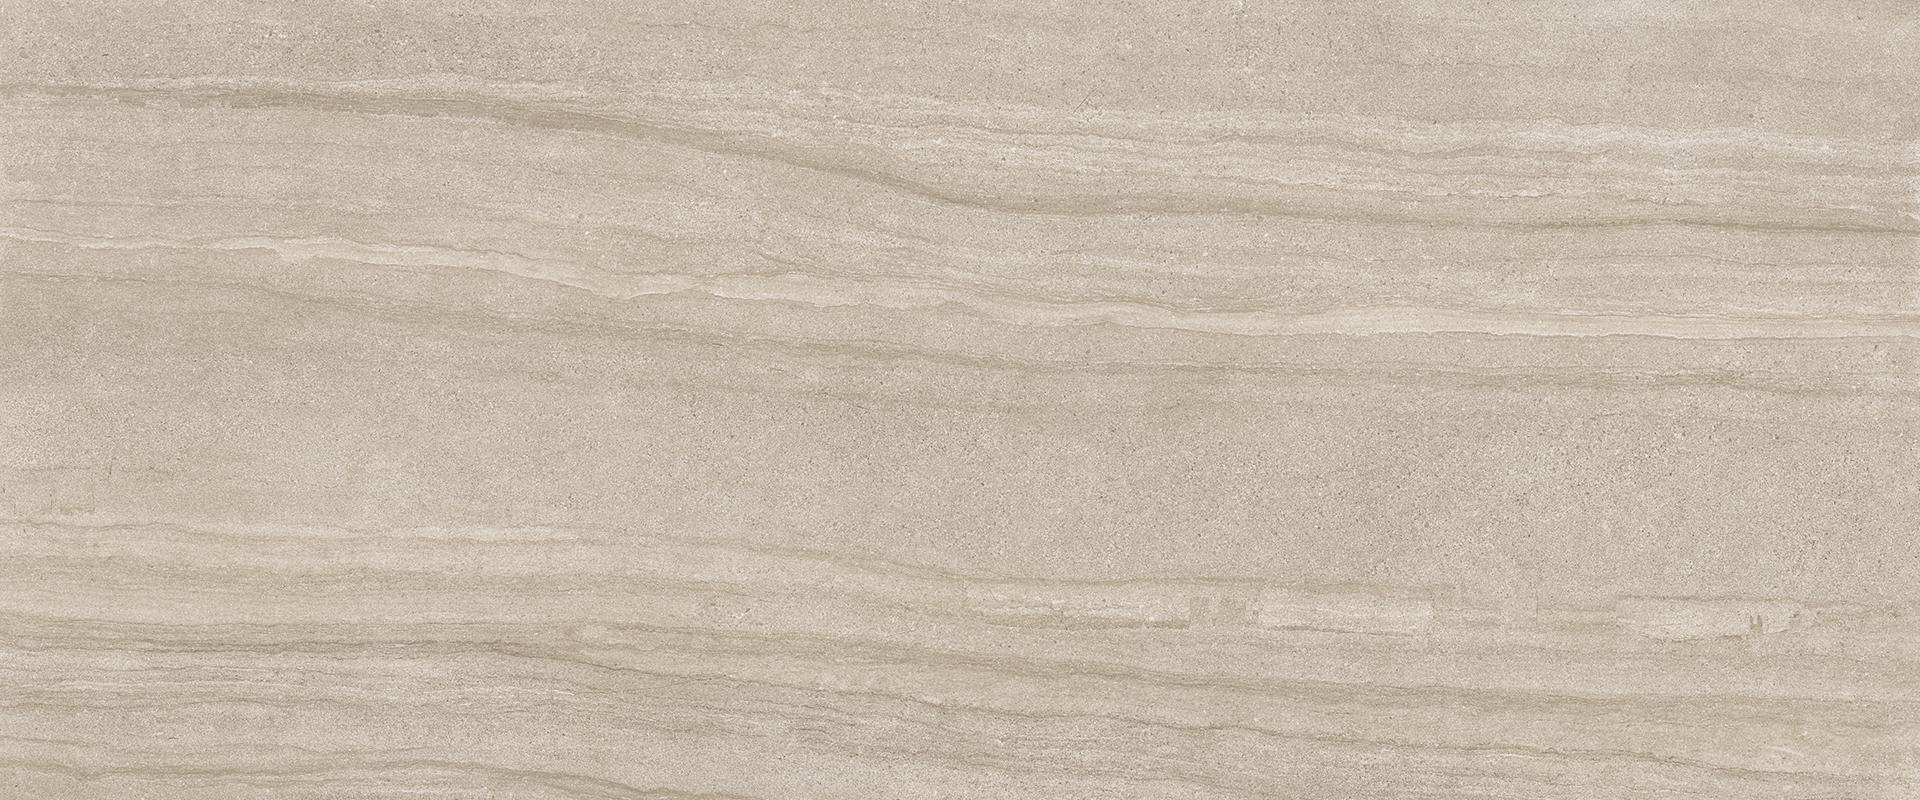 Stone Project: Falda Sand Field Tile (24"x48"x9.5-mm | semi glossy)